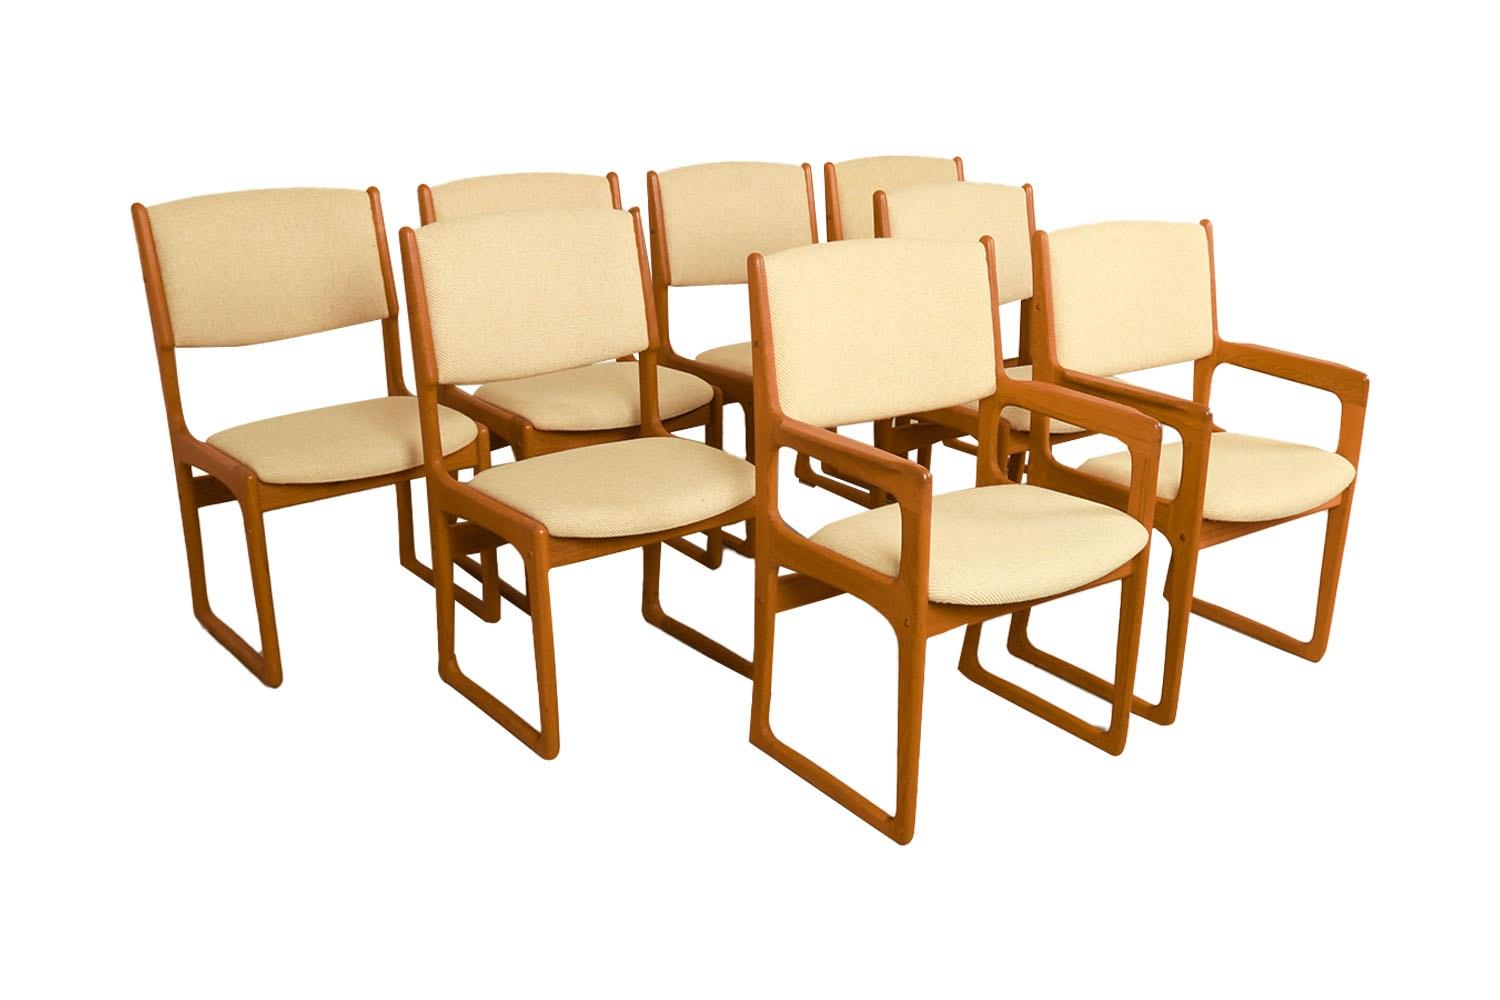 Satz von acht wunderschön geformten dänischen modernen Teakholz-Esszimmerstühlen, entworfen von Benny Linden. Das Label des Herstellers unter dem Sitz {Benny Linden Design}. Dieses Set besteht aus zwei Sesseln und sechs Beistellstühlen aus Teakholz